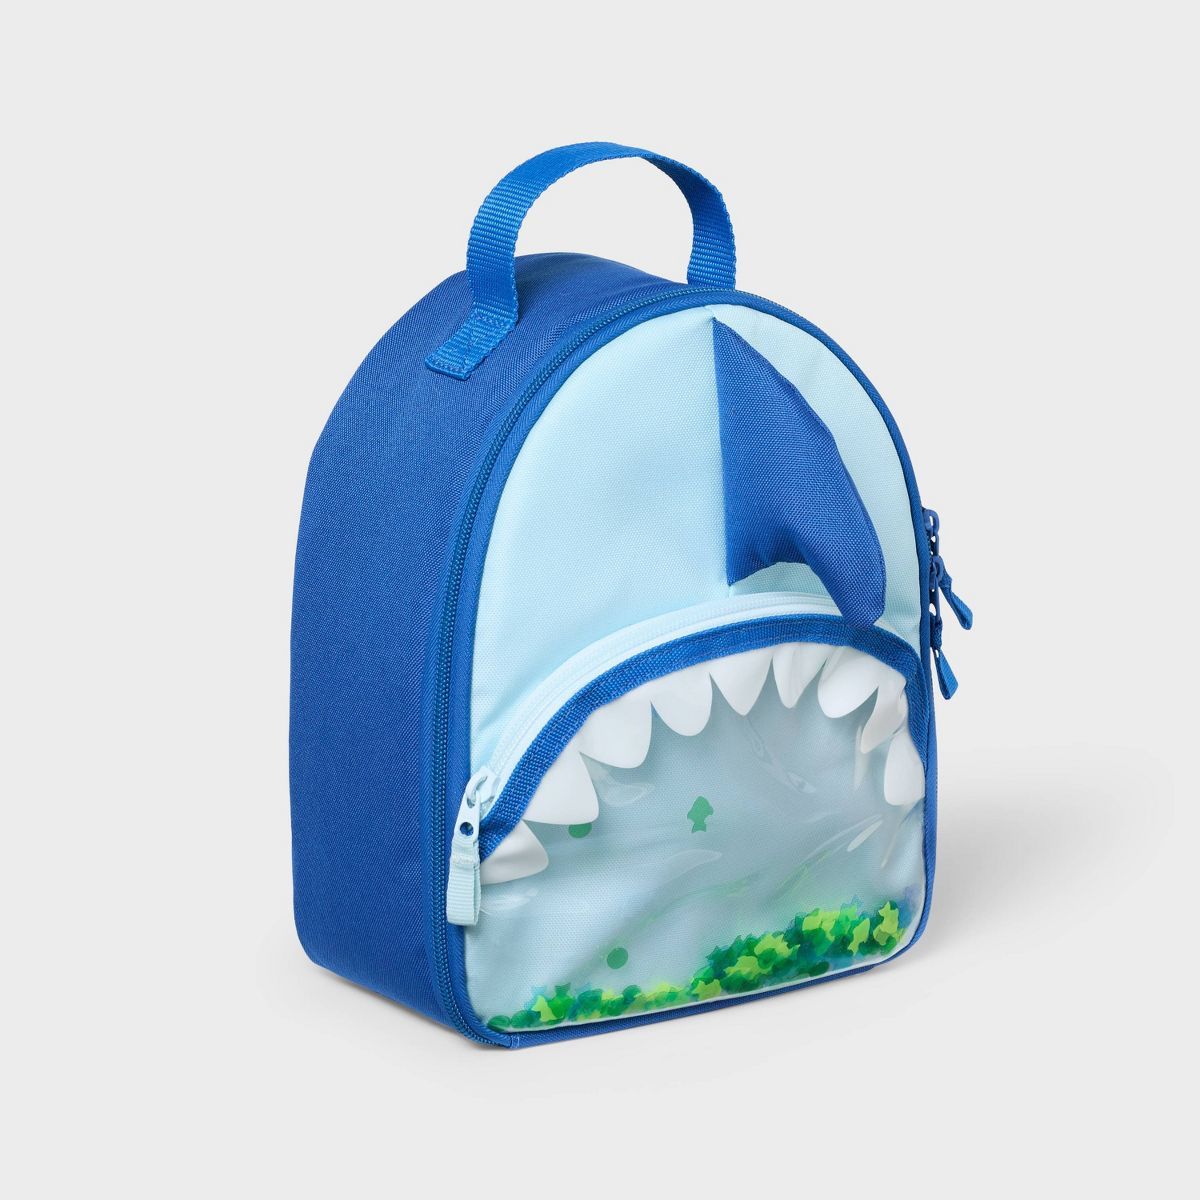 Kids' Fashion Lunch Bag Shark - Cat & Jack™️ | Target